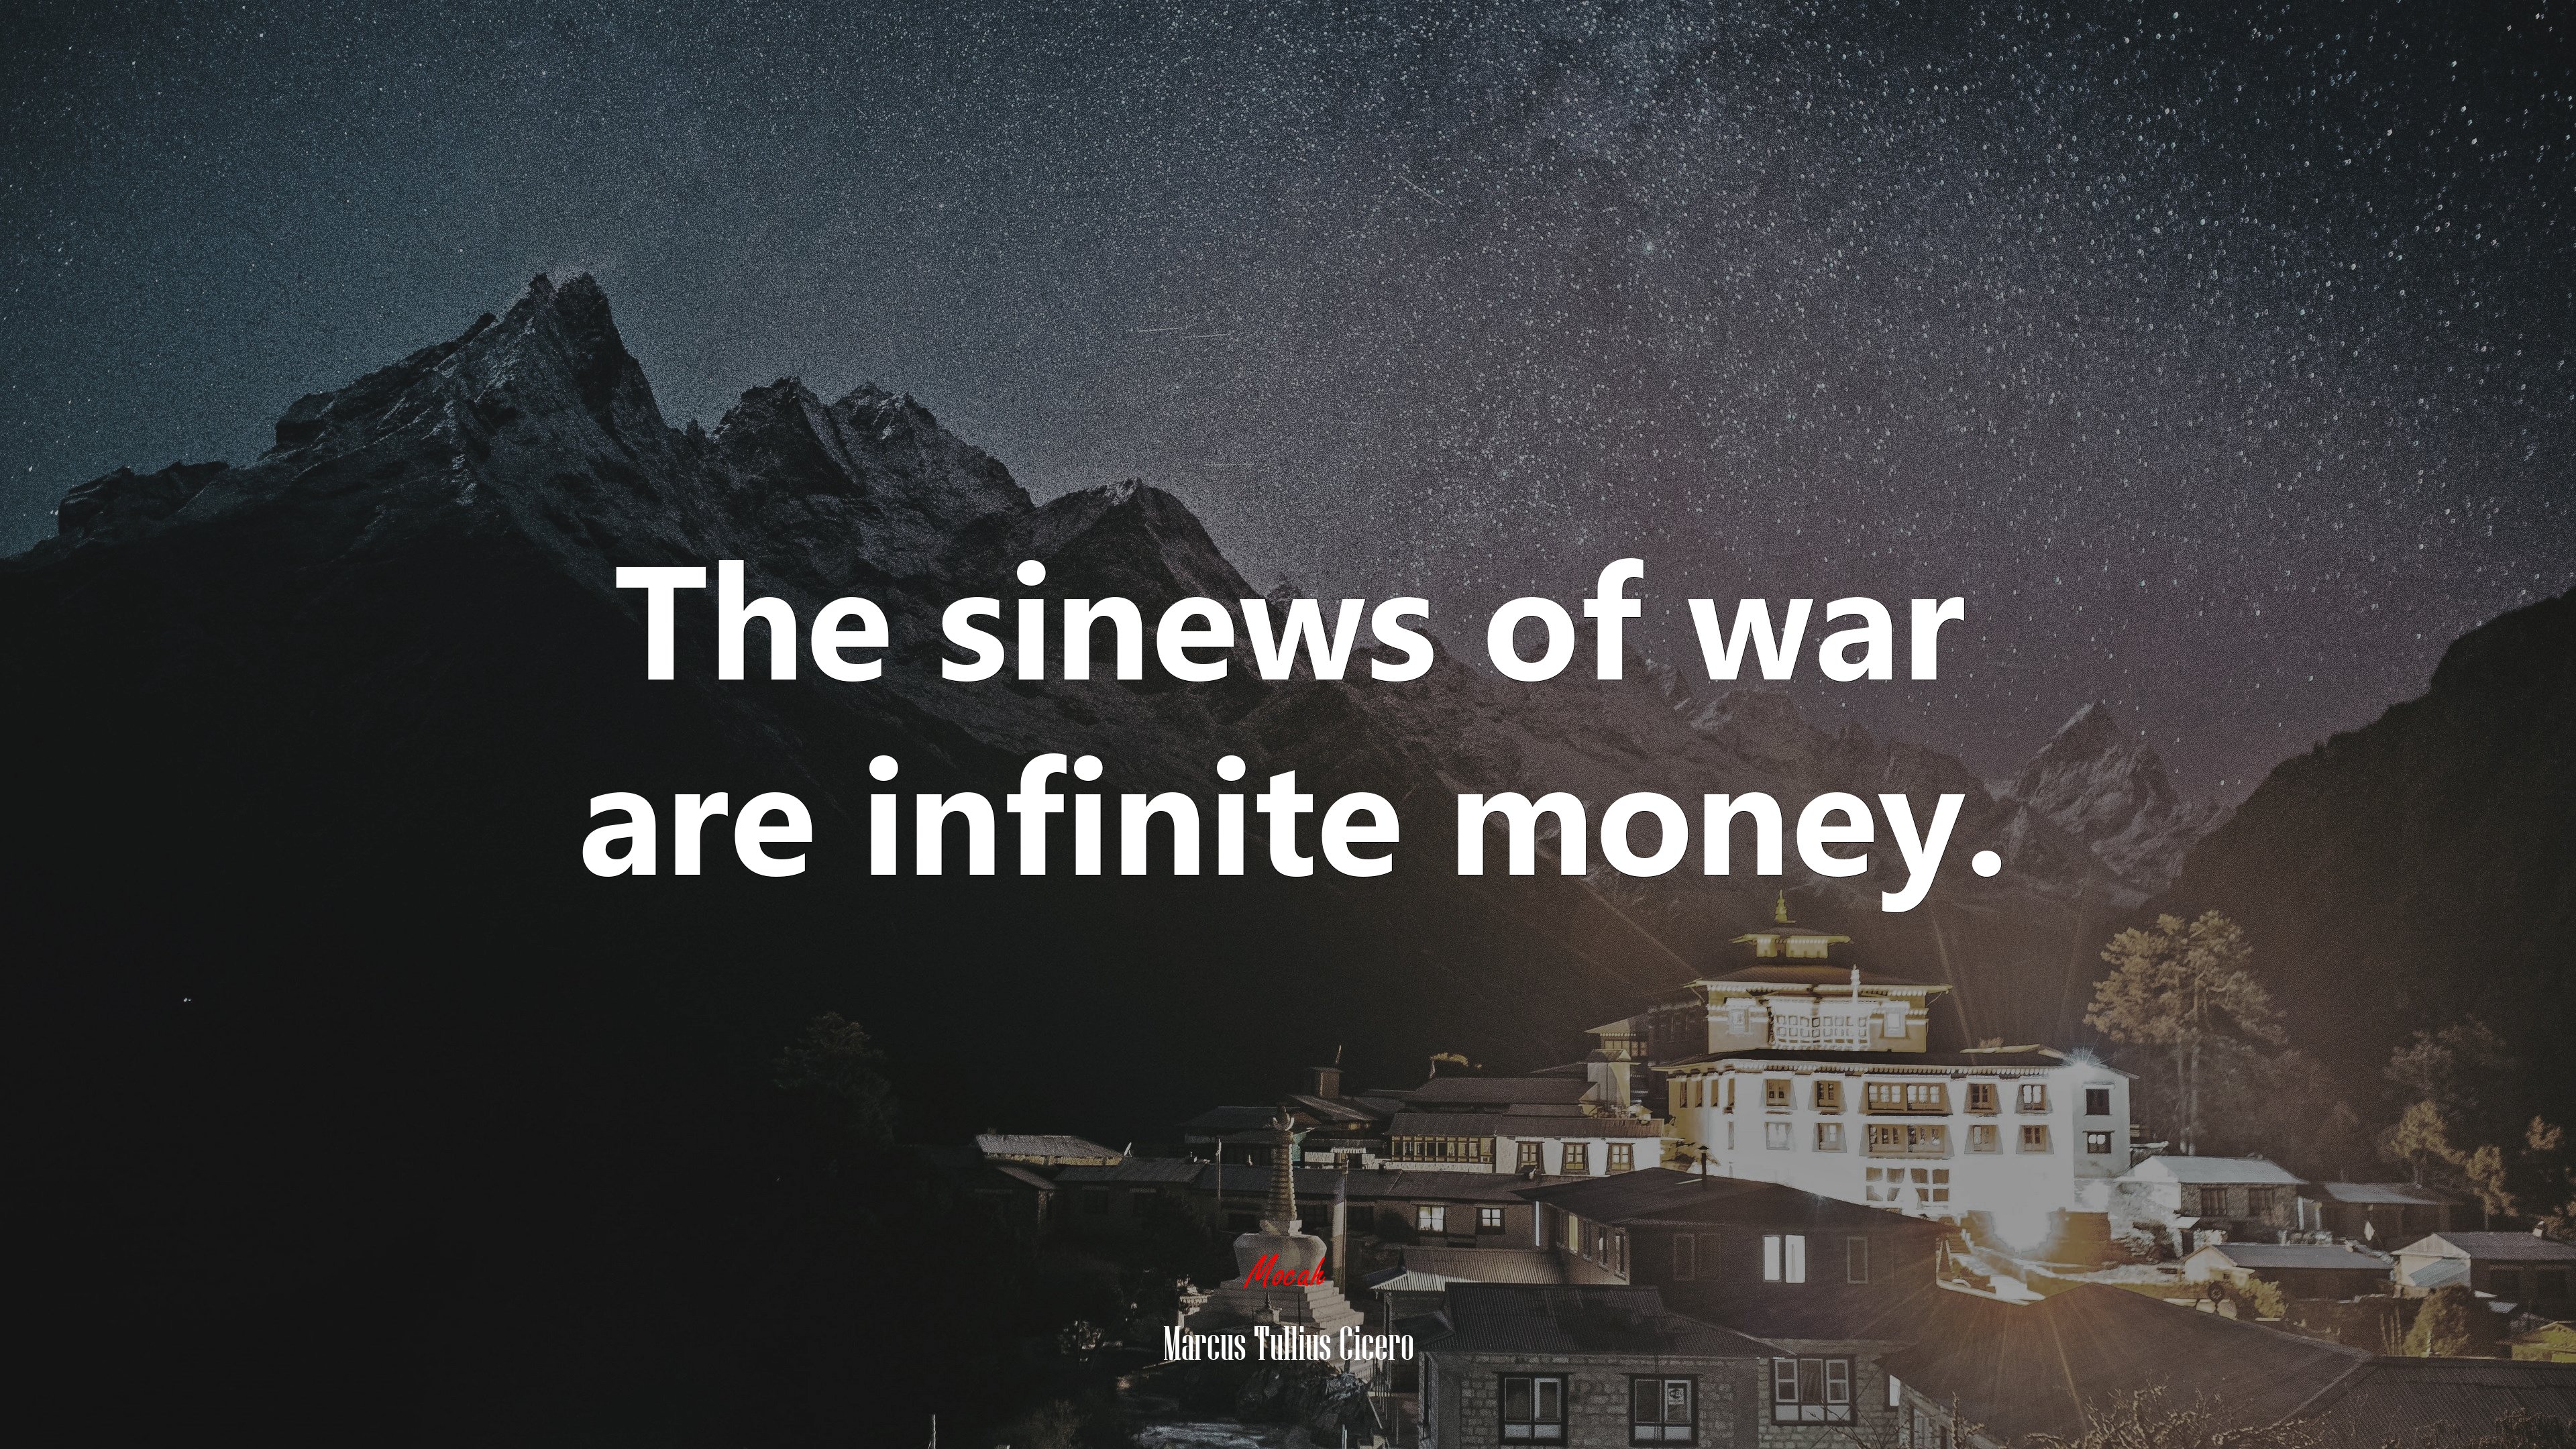 The sinews of war are infinite money marcus tullius cicero quote